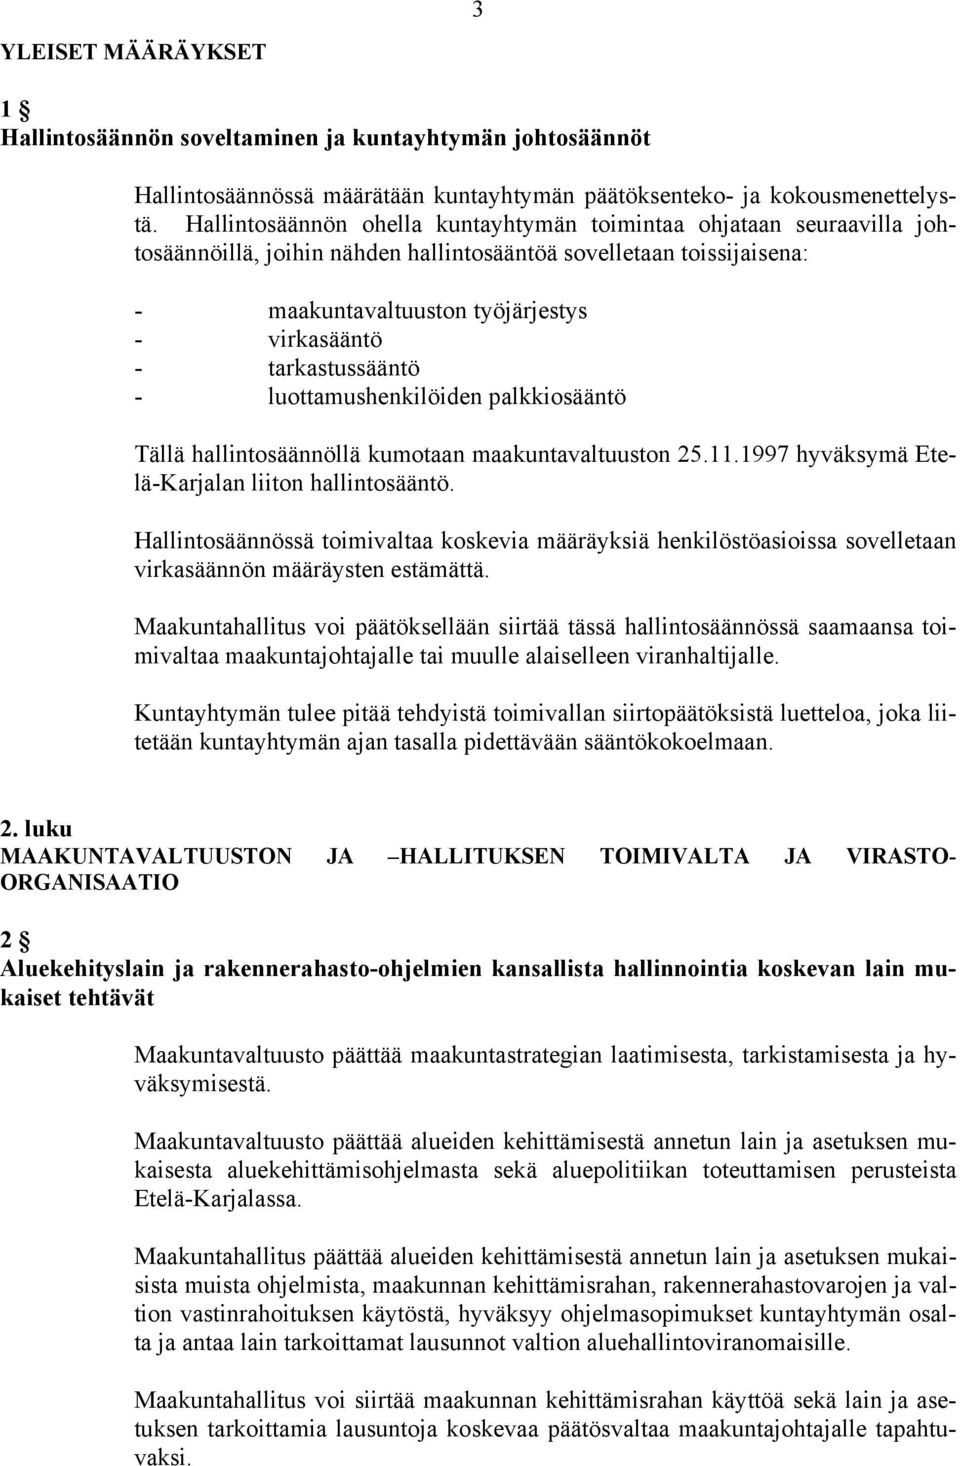 tarkastussääntö - luottamushenkilöiden palkkiosääntö Tällä hallintosäännöllä kumotaan maakuntavaltuuston 25.11.1997 hyväksymä Etelä-Karjalan liiton hallintosääntö.